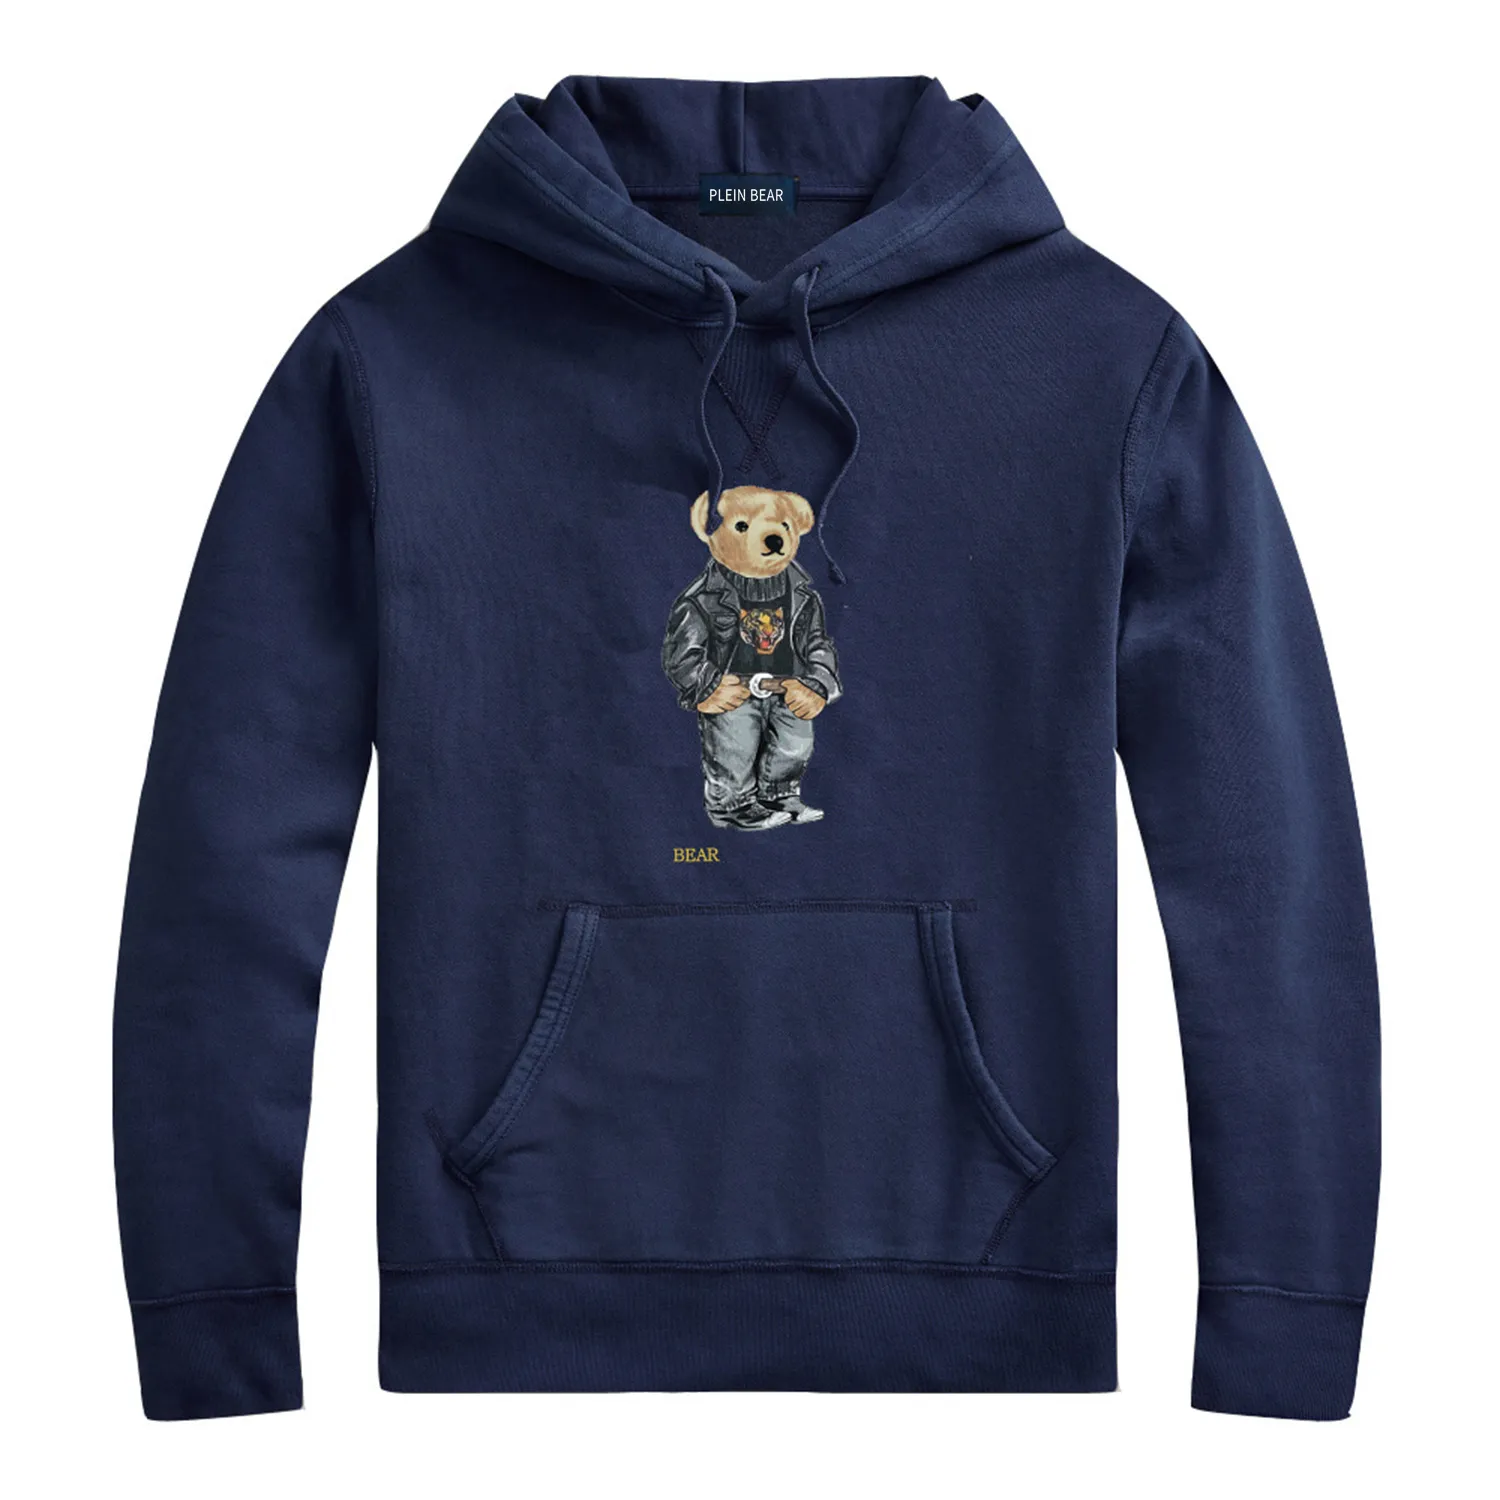 Plein Bear Marka Erkek Hoodies Sweatshirt Sıcak Kalın Sweatshirt Hip-Hop gevşek karakteristik kazak oyuncak ayı Lüks Erkekler Hoodie 9061